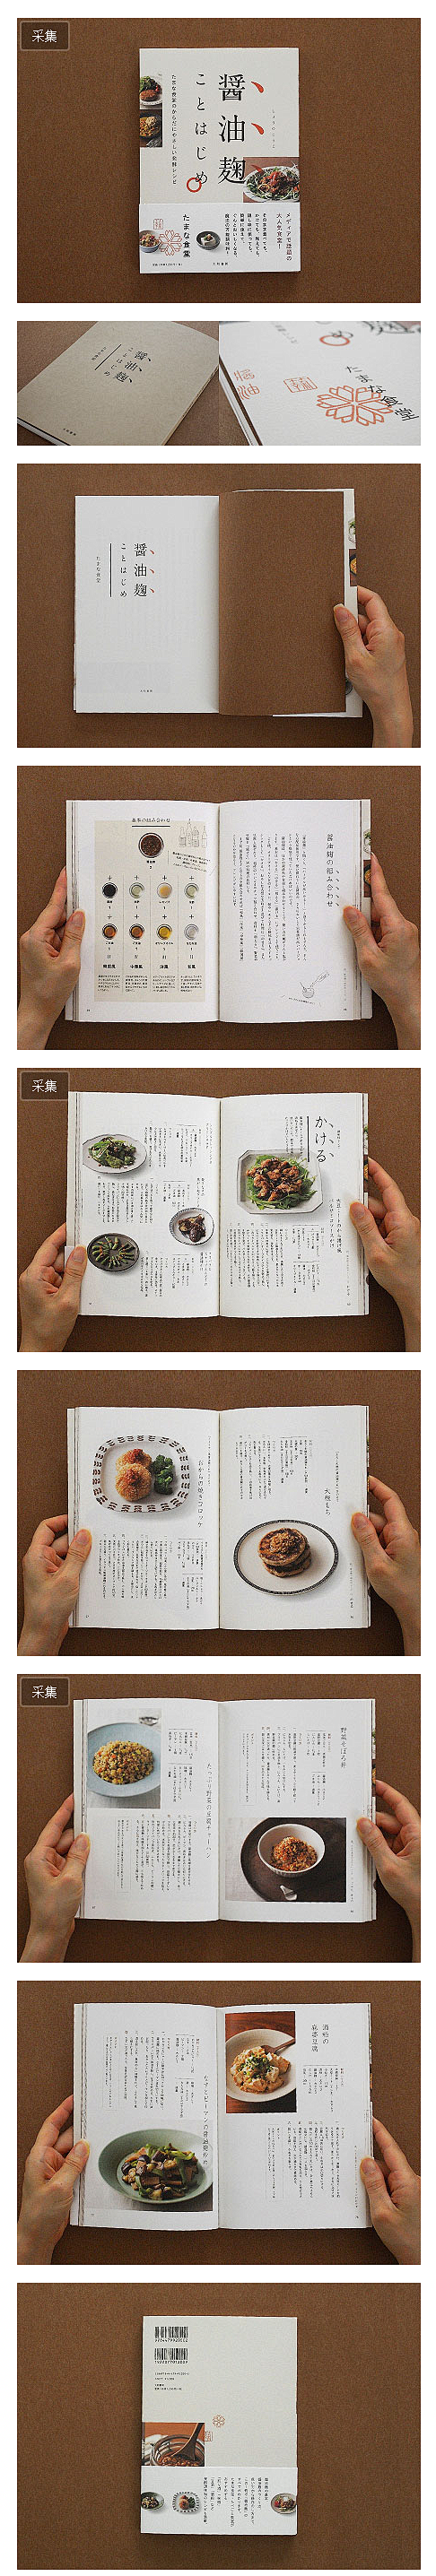 《醤油麹》日本菜谱书籍设计